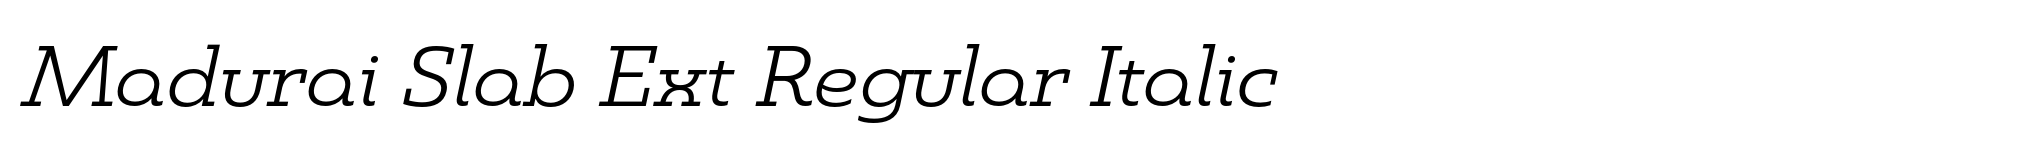 Madurai Slab Ext Regular Italic image